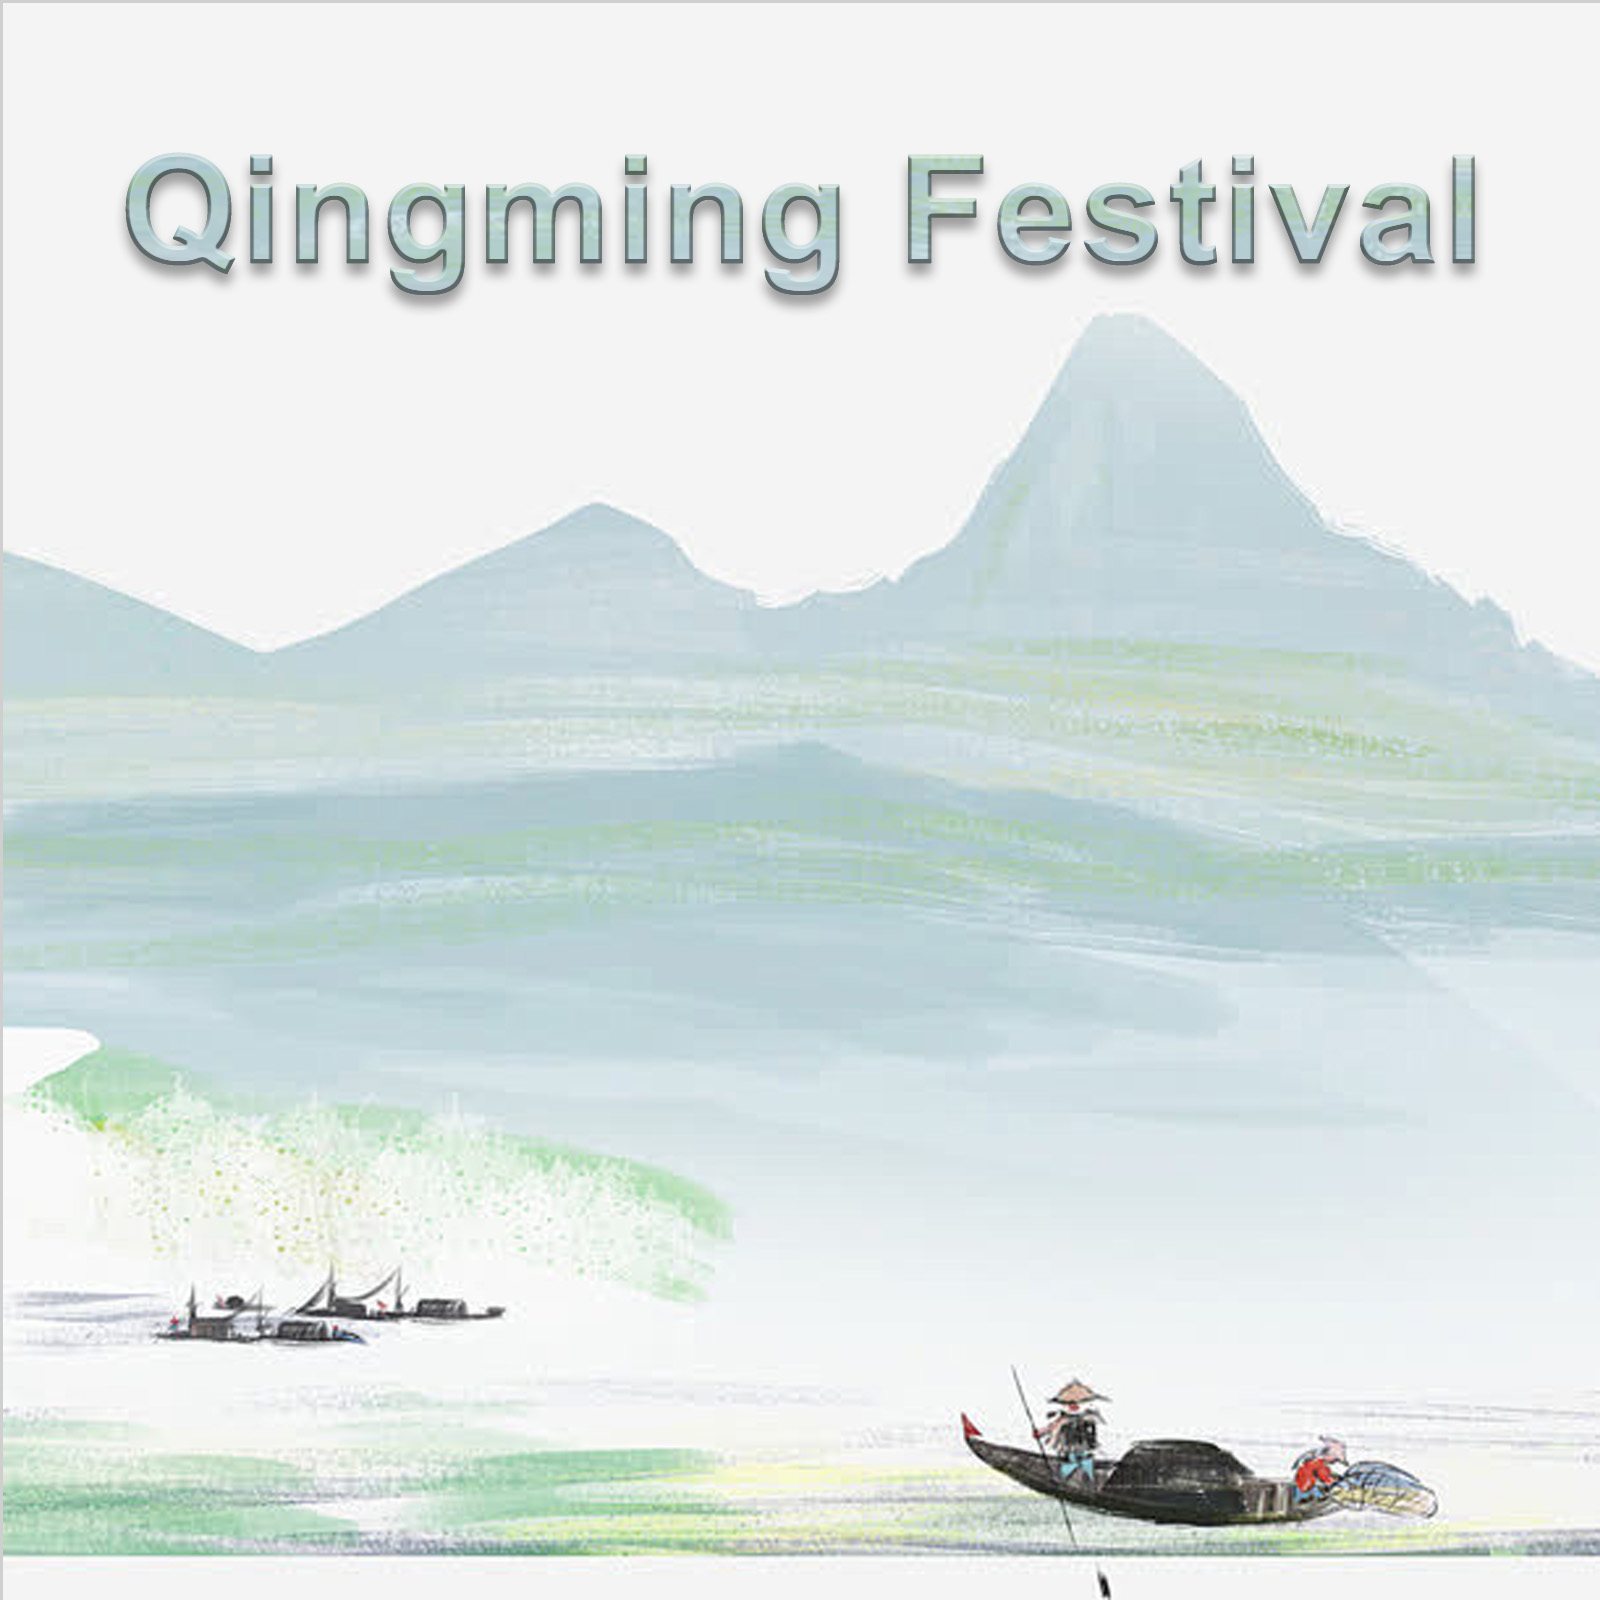 CNLonQcom Известување за фестивалот Кингминг